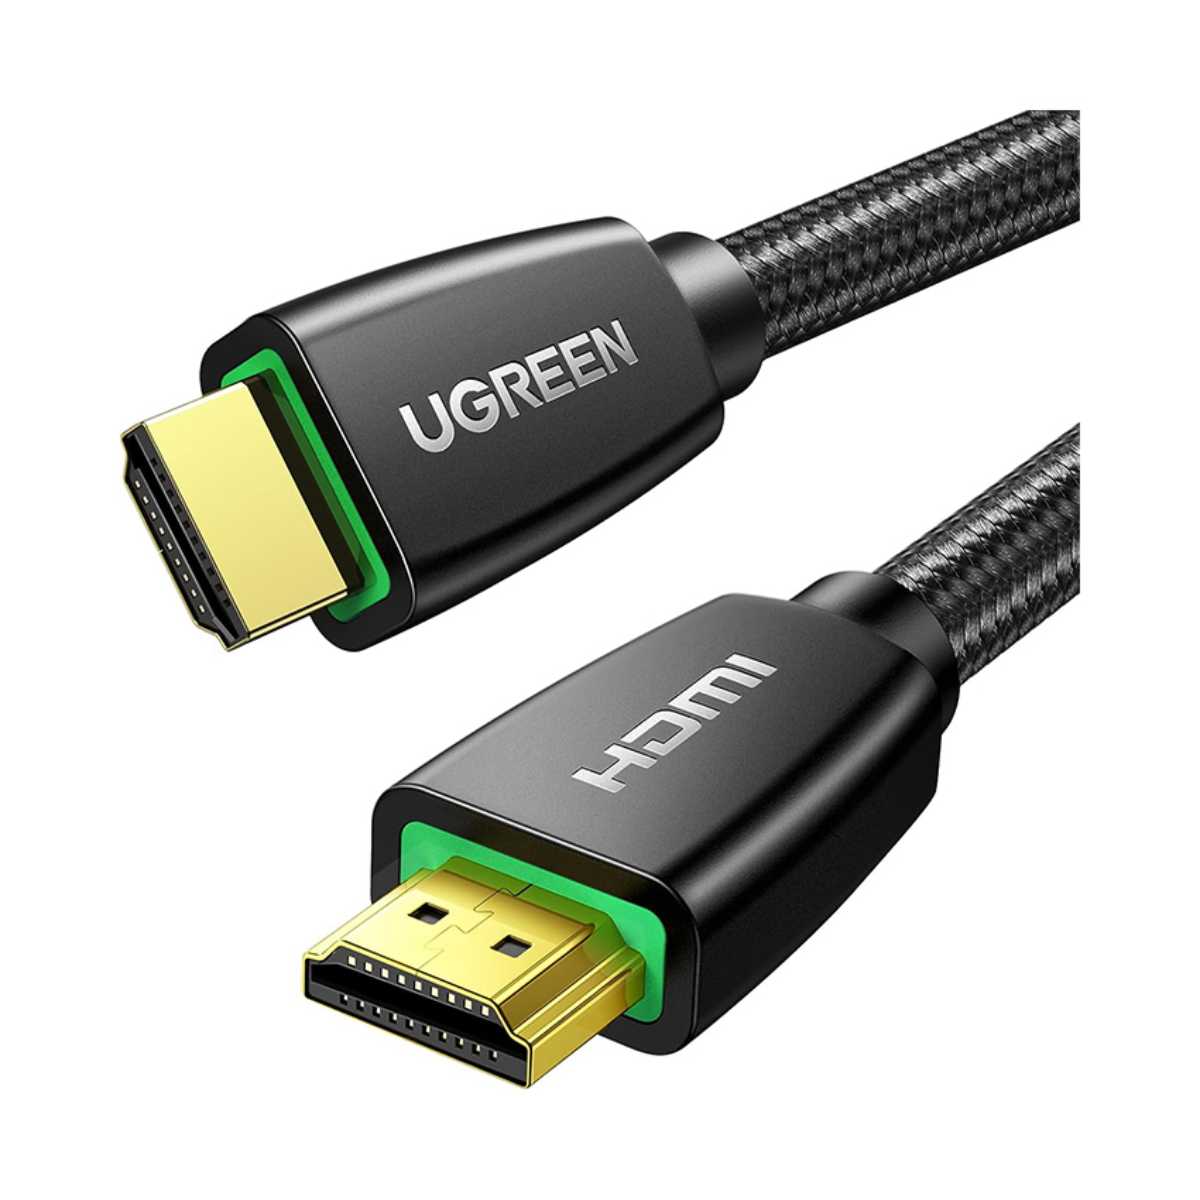 Cáp HDMI 1.5M Ugreen 40409 chuẩn 2.0, hỗ trợ độ phân giải 3D + 4K*2K + 4096x2160p/30Hz, tốc độ truyền tải 18Gb/s, chân cắm mạ vàng 24K